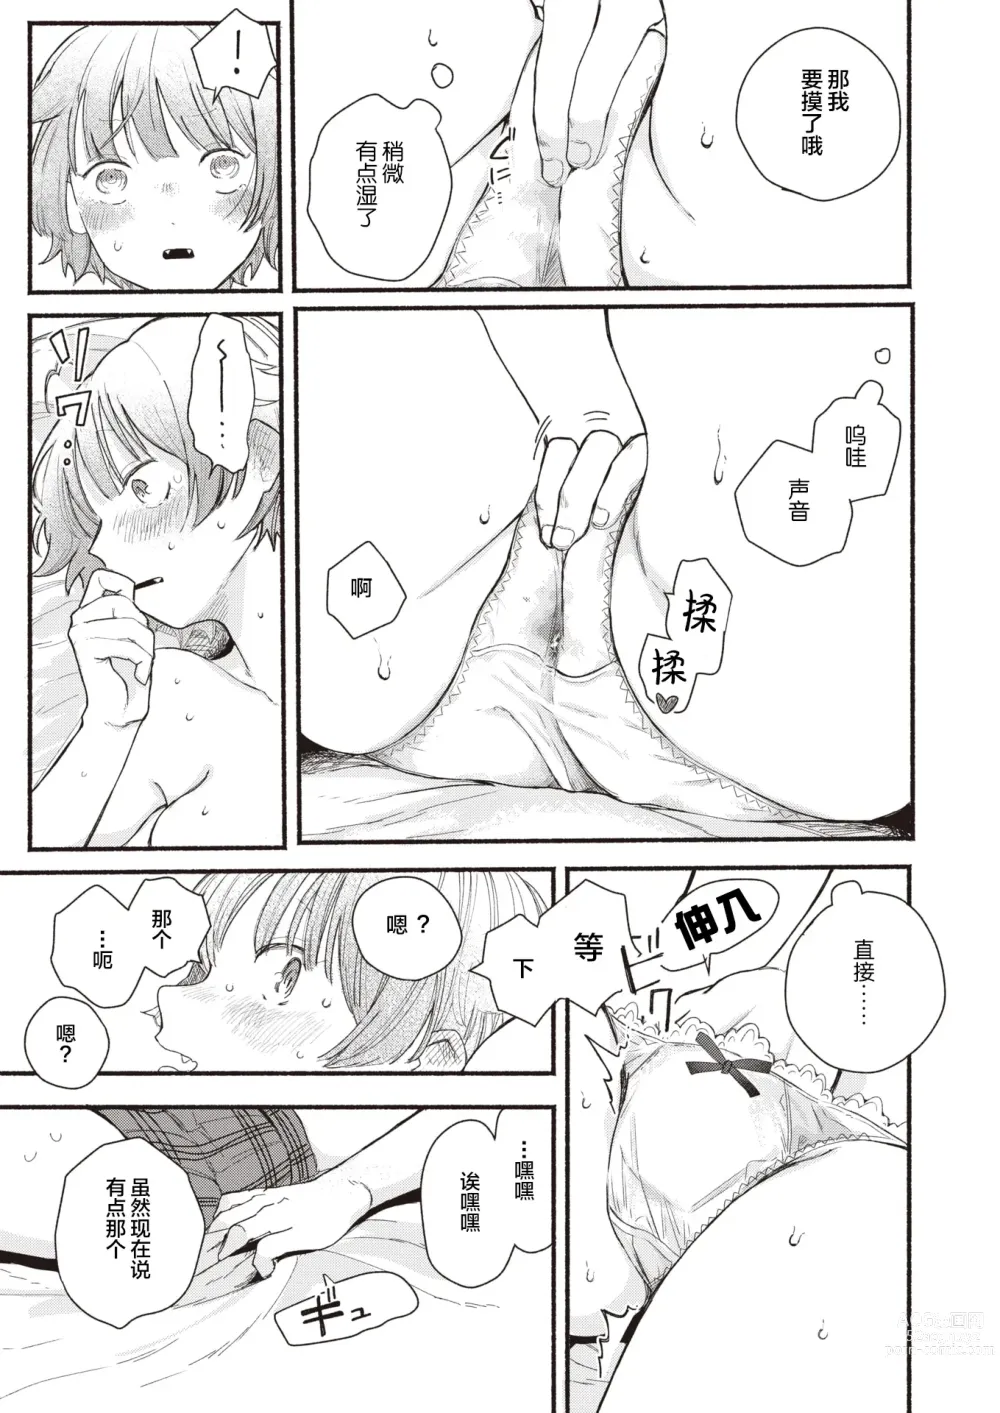 Page 7 of manga Sekka no Saezuri